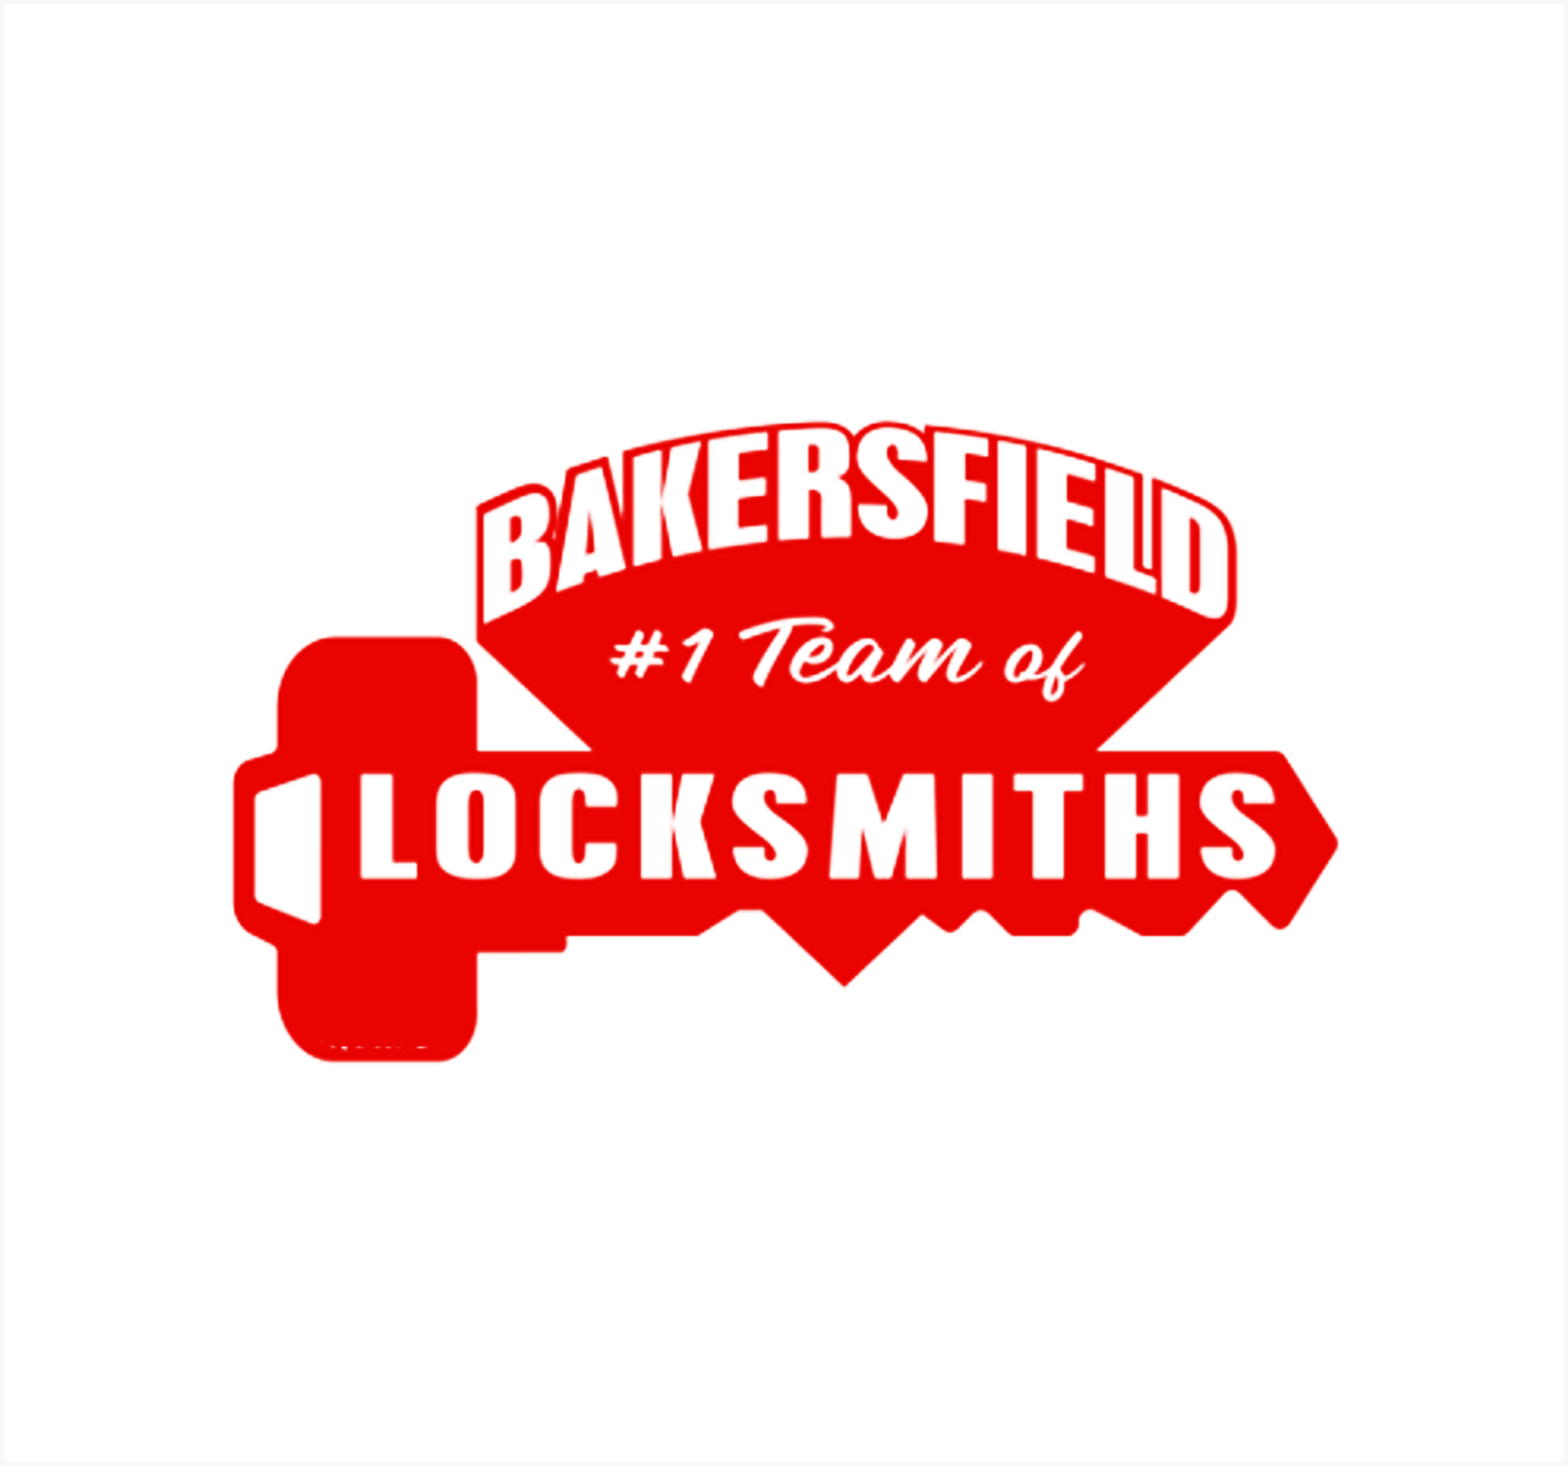 bakersfield locksmith logo - 661-322-3371 - debbi bagley